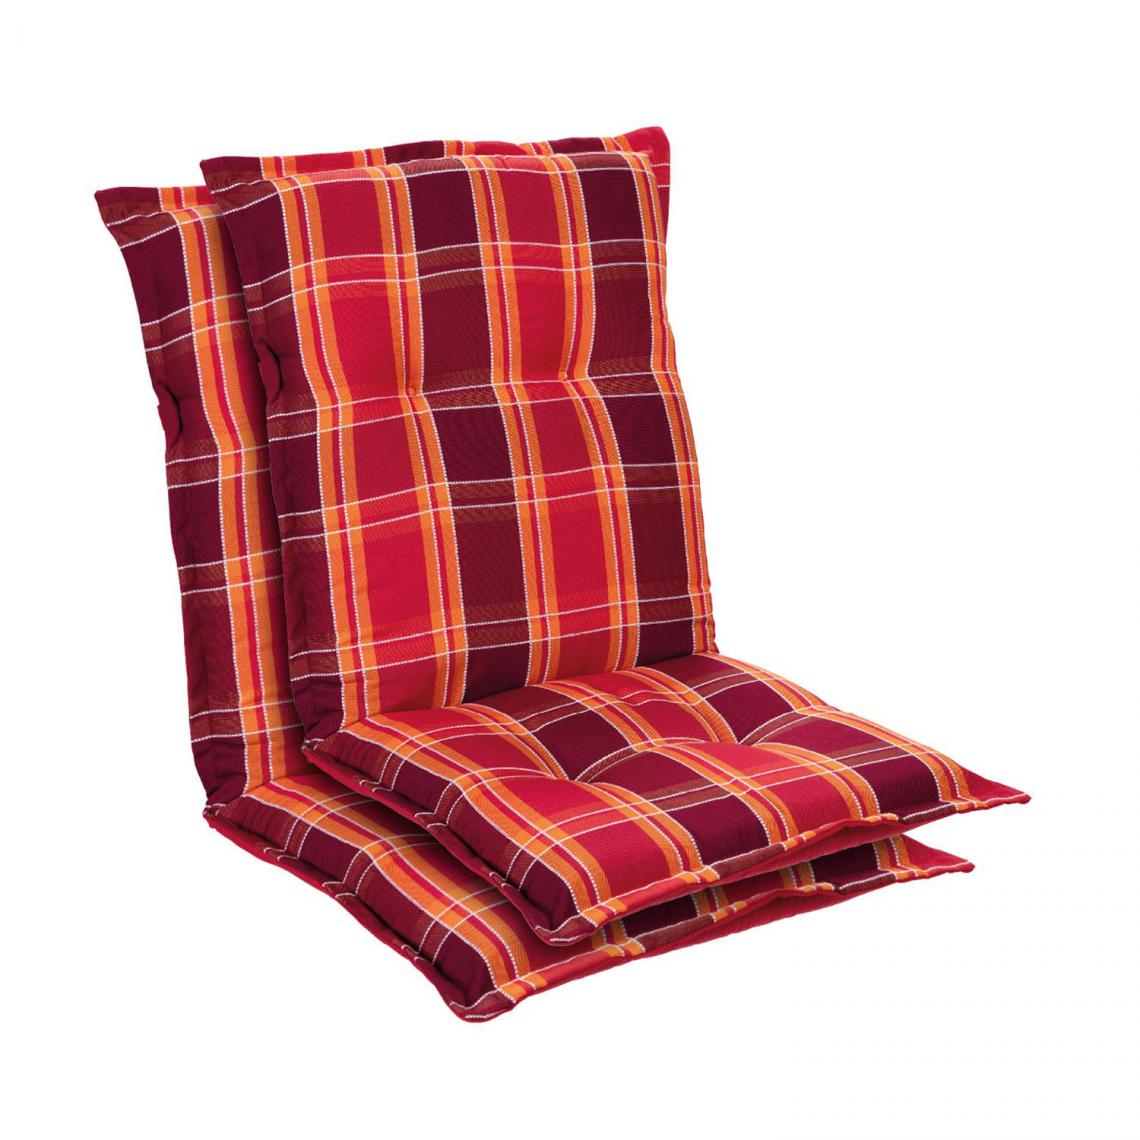 Blumfeldt - Prato coussin de fauteuil dossier bas Polyester 50x100x8cm - Rouge - Coussins, galettes de jardin